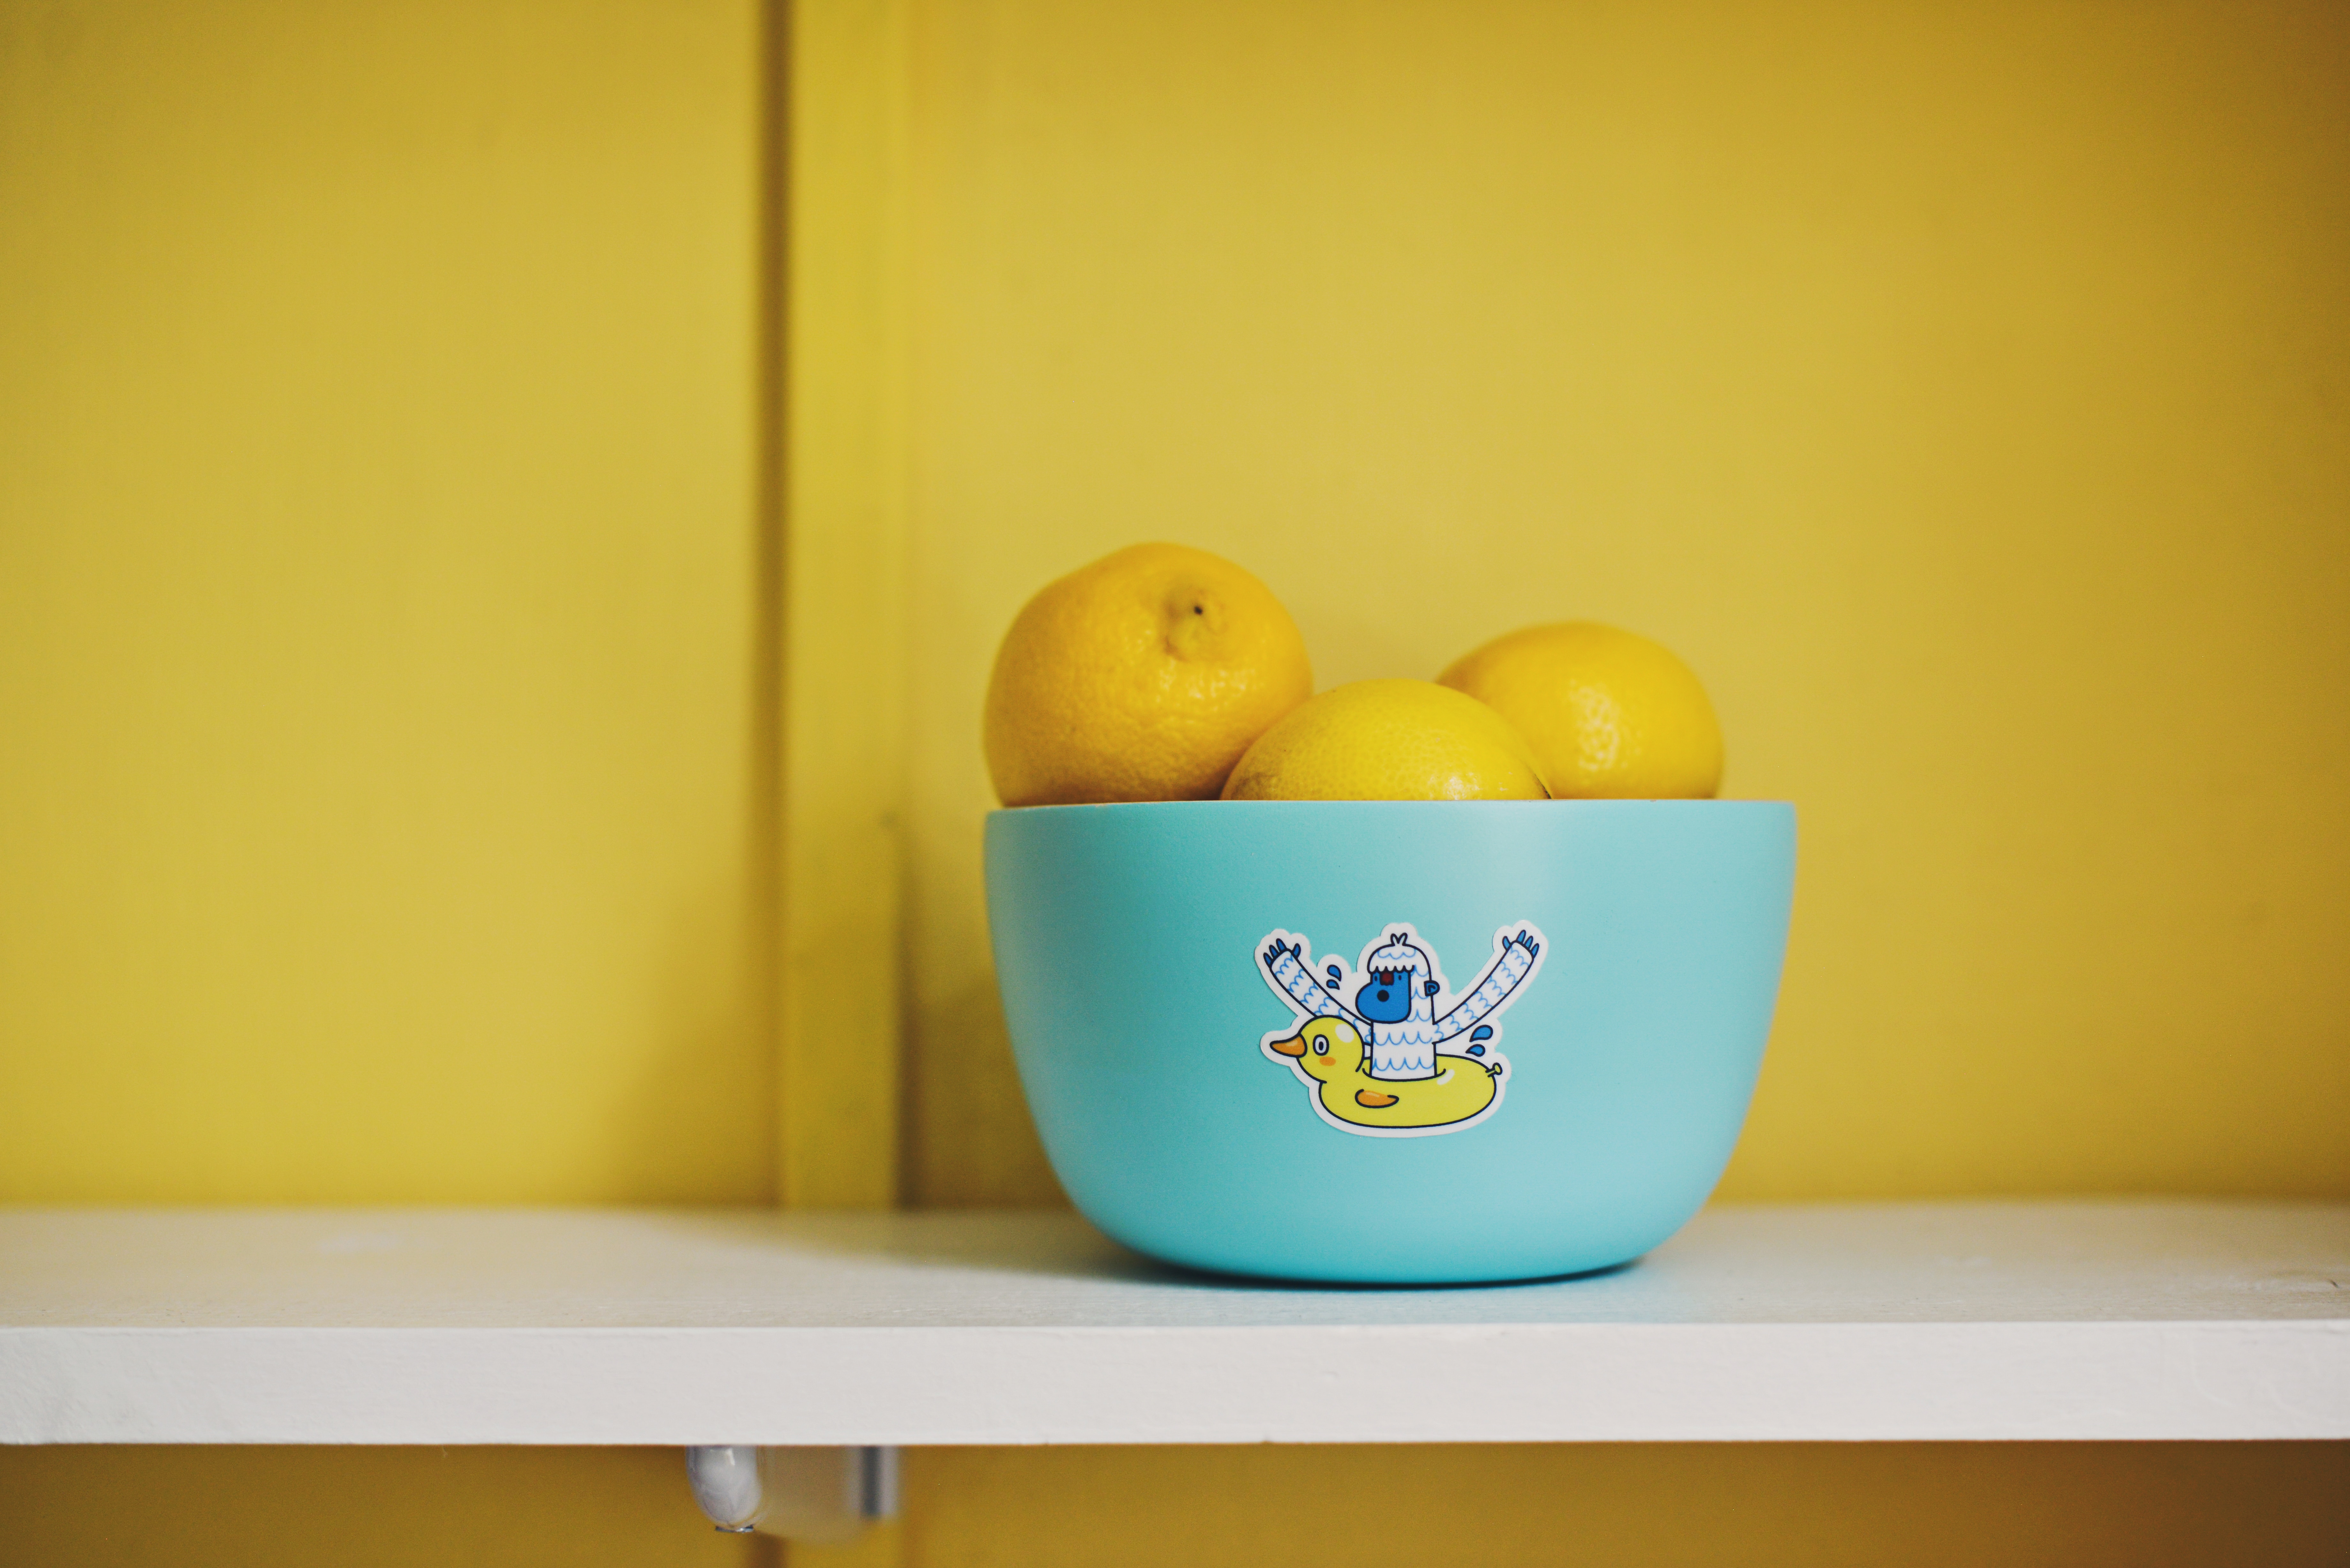 lemons in bowl